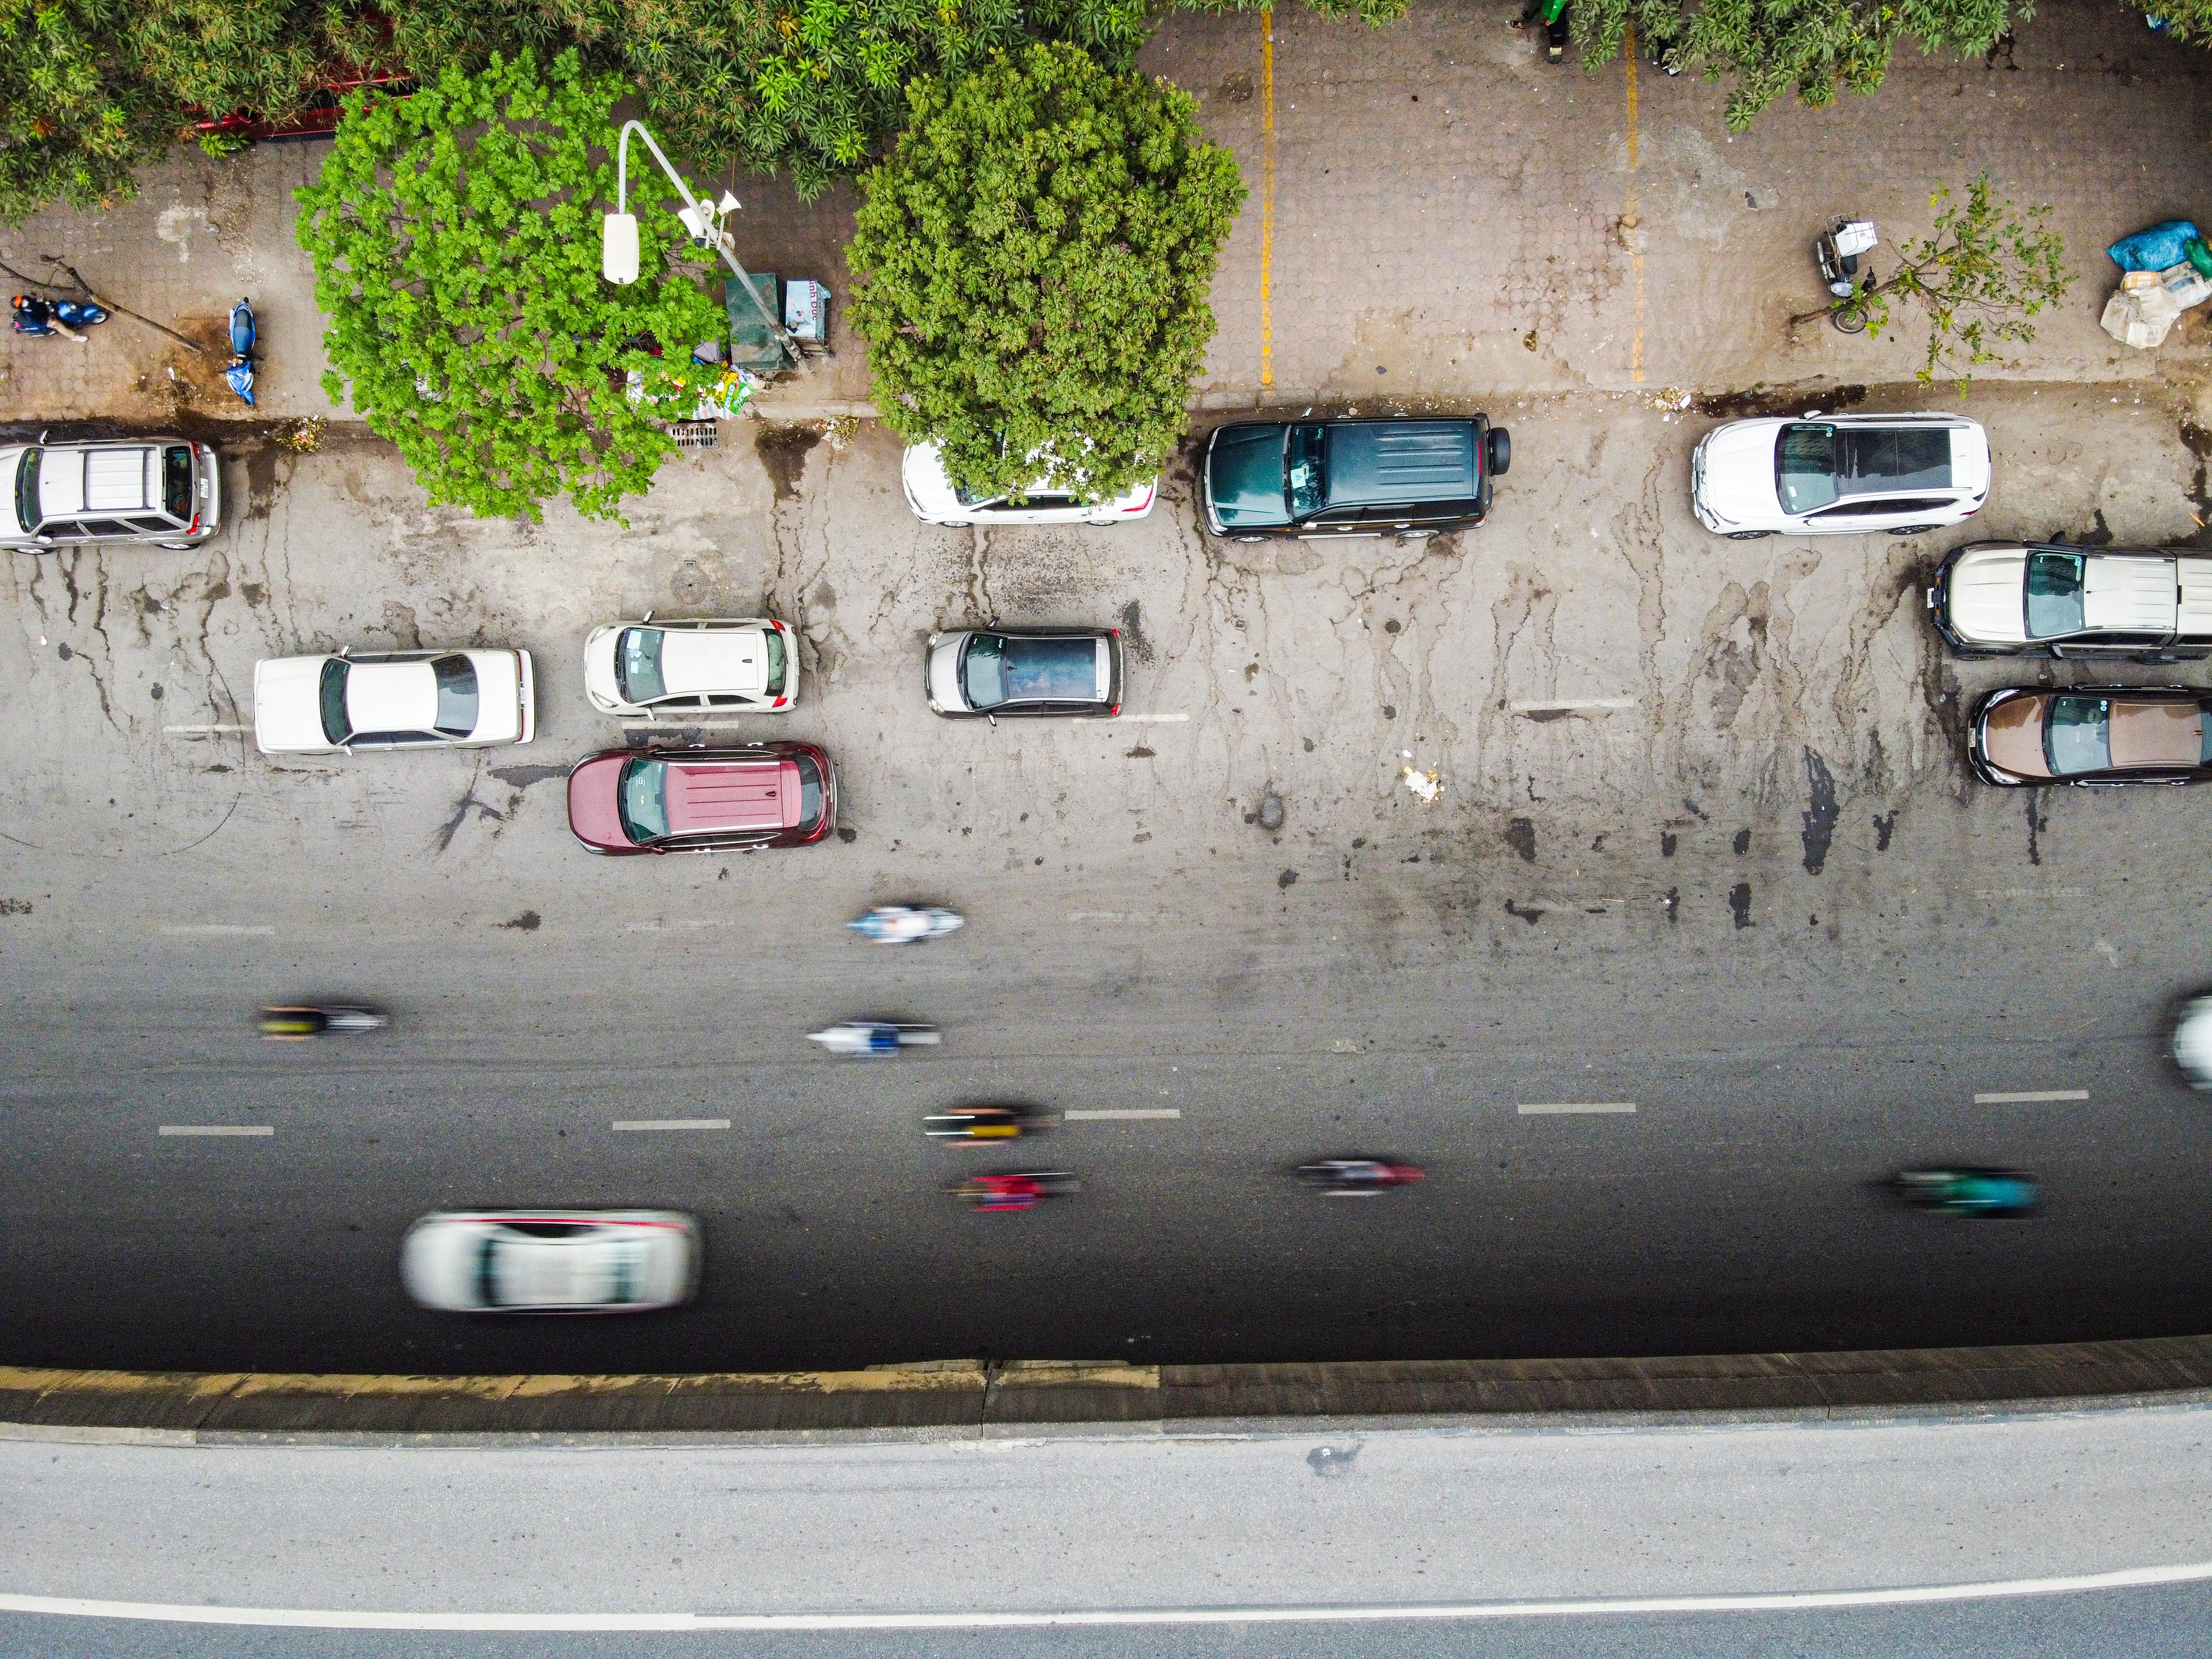 Đỗ xe ở lòng đường Hà Nội, tài xế xếp hàng dài chờ bị xử phạt - ảnh 9